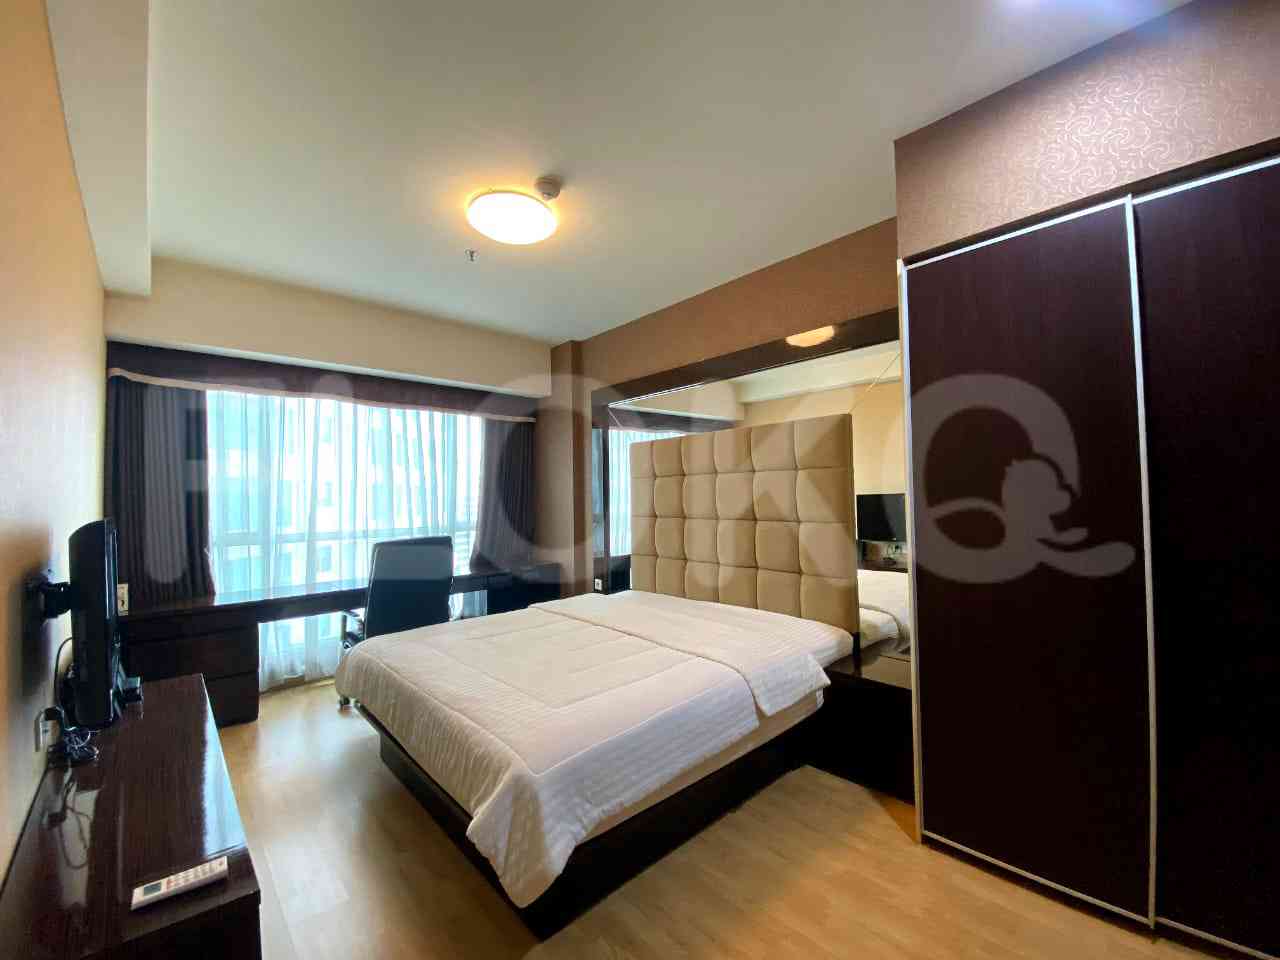 2 Bedroom on 15th Floor for Rent in Gandaria Heights  - fgaa00 4